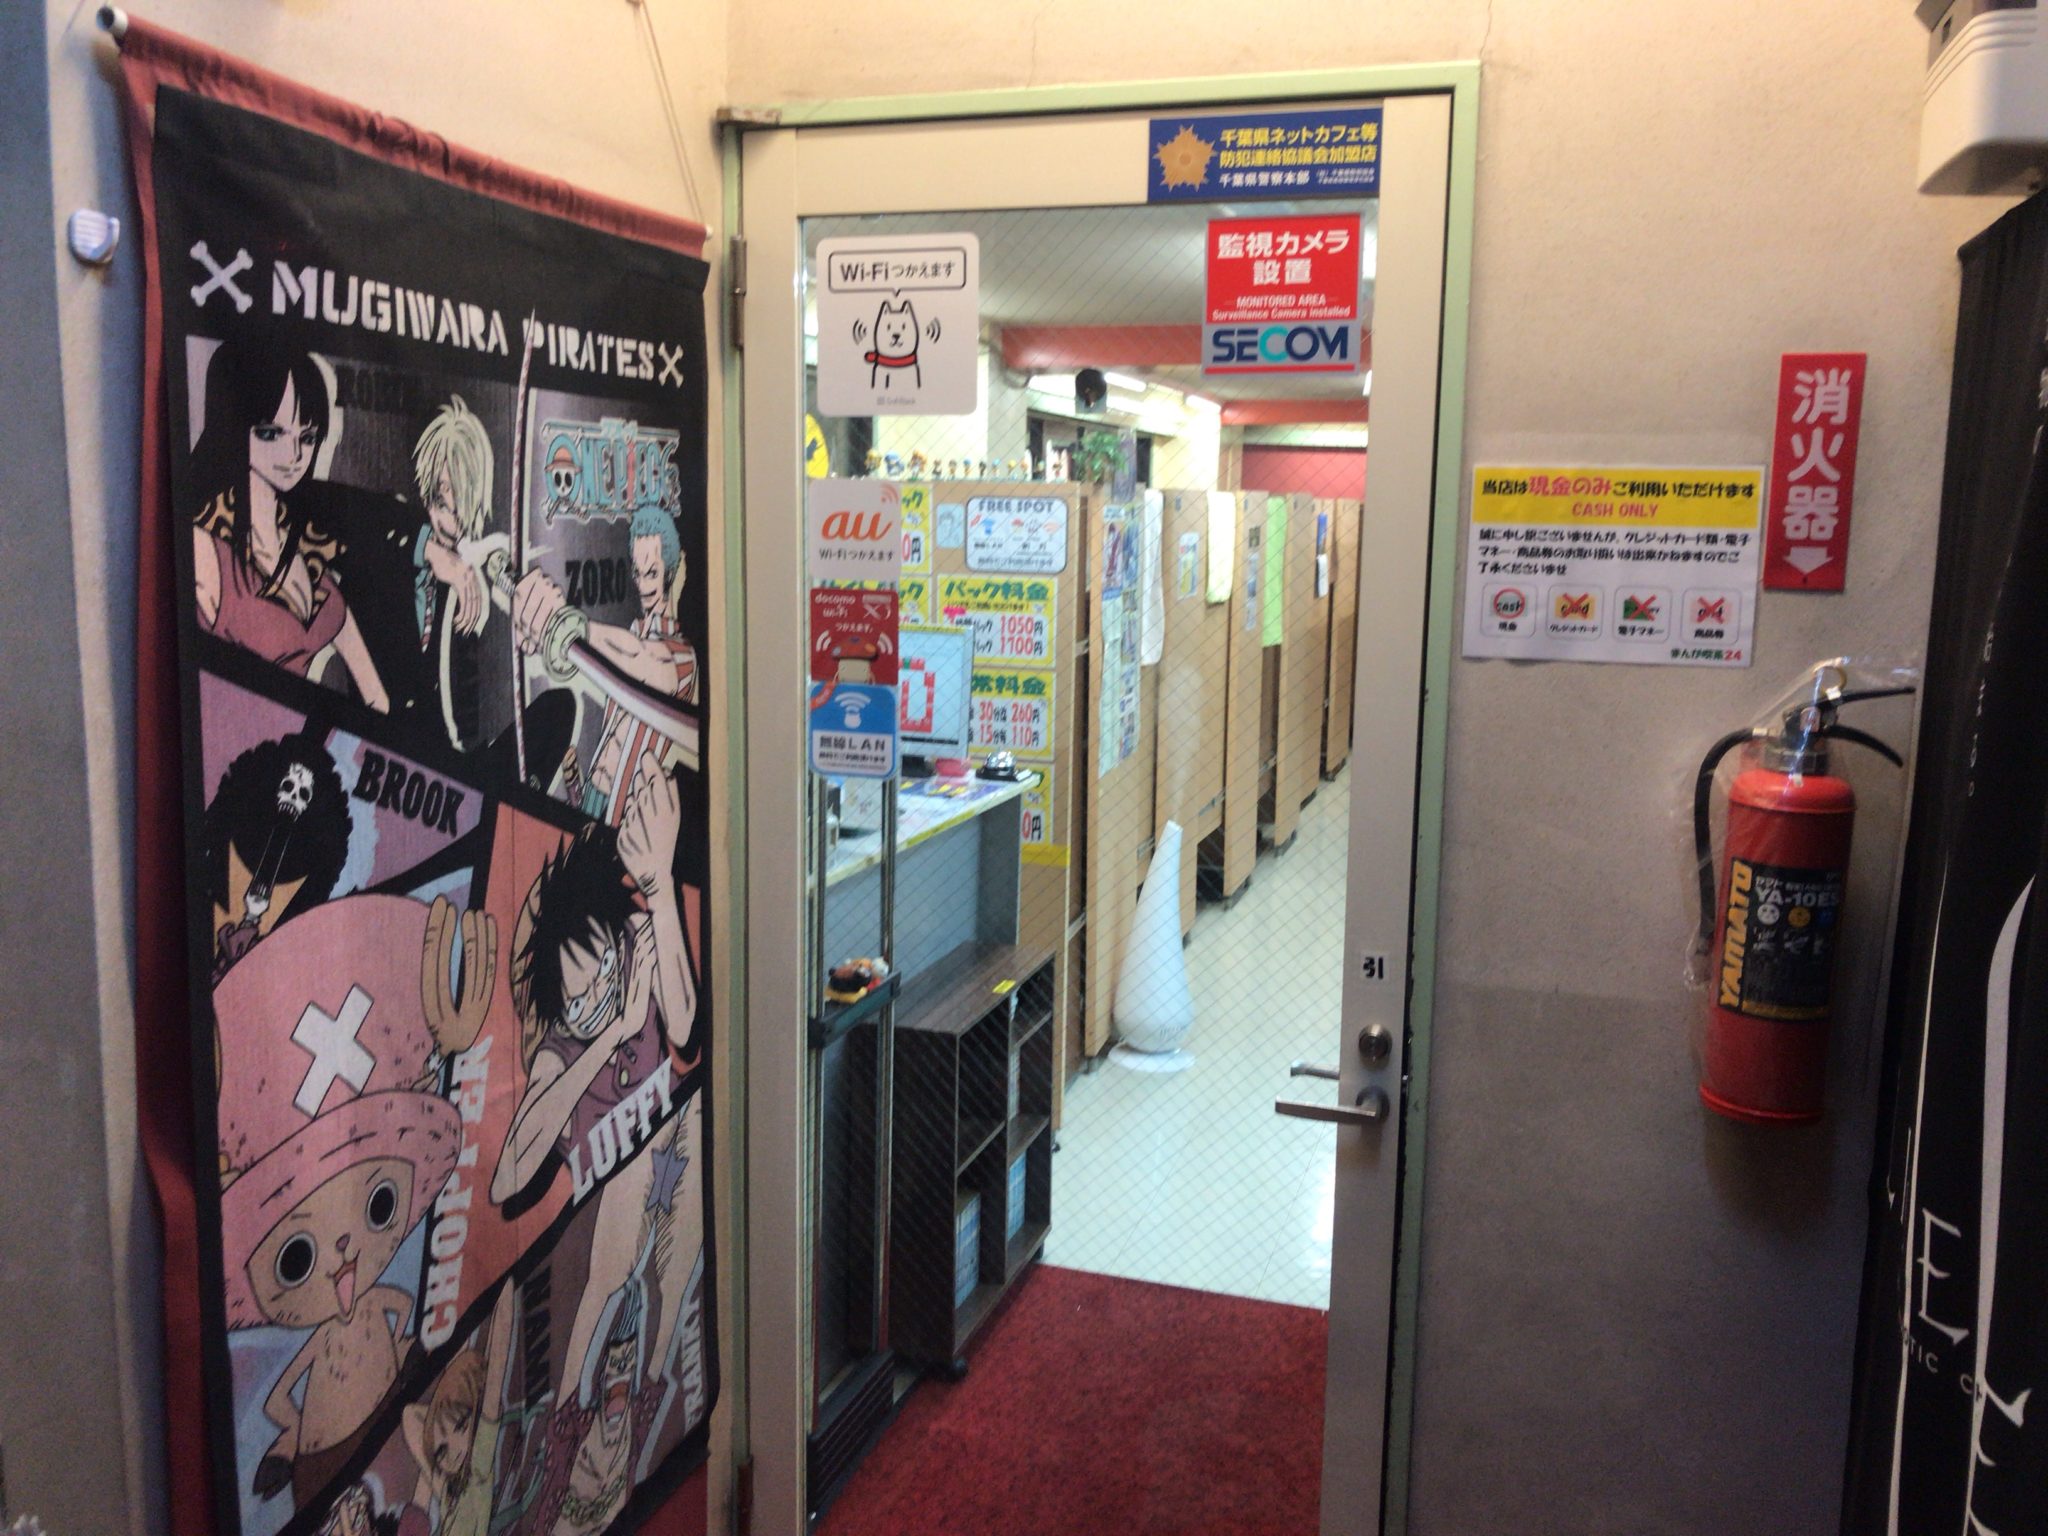 西船橋駅から徒歩3分 まんが喫茶24店をレポート 日本全国のネカフェ 漫画喫茶マップのヒマップ